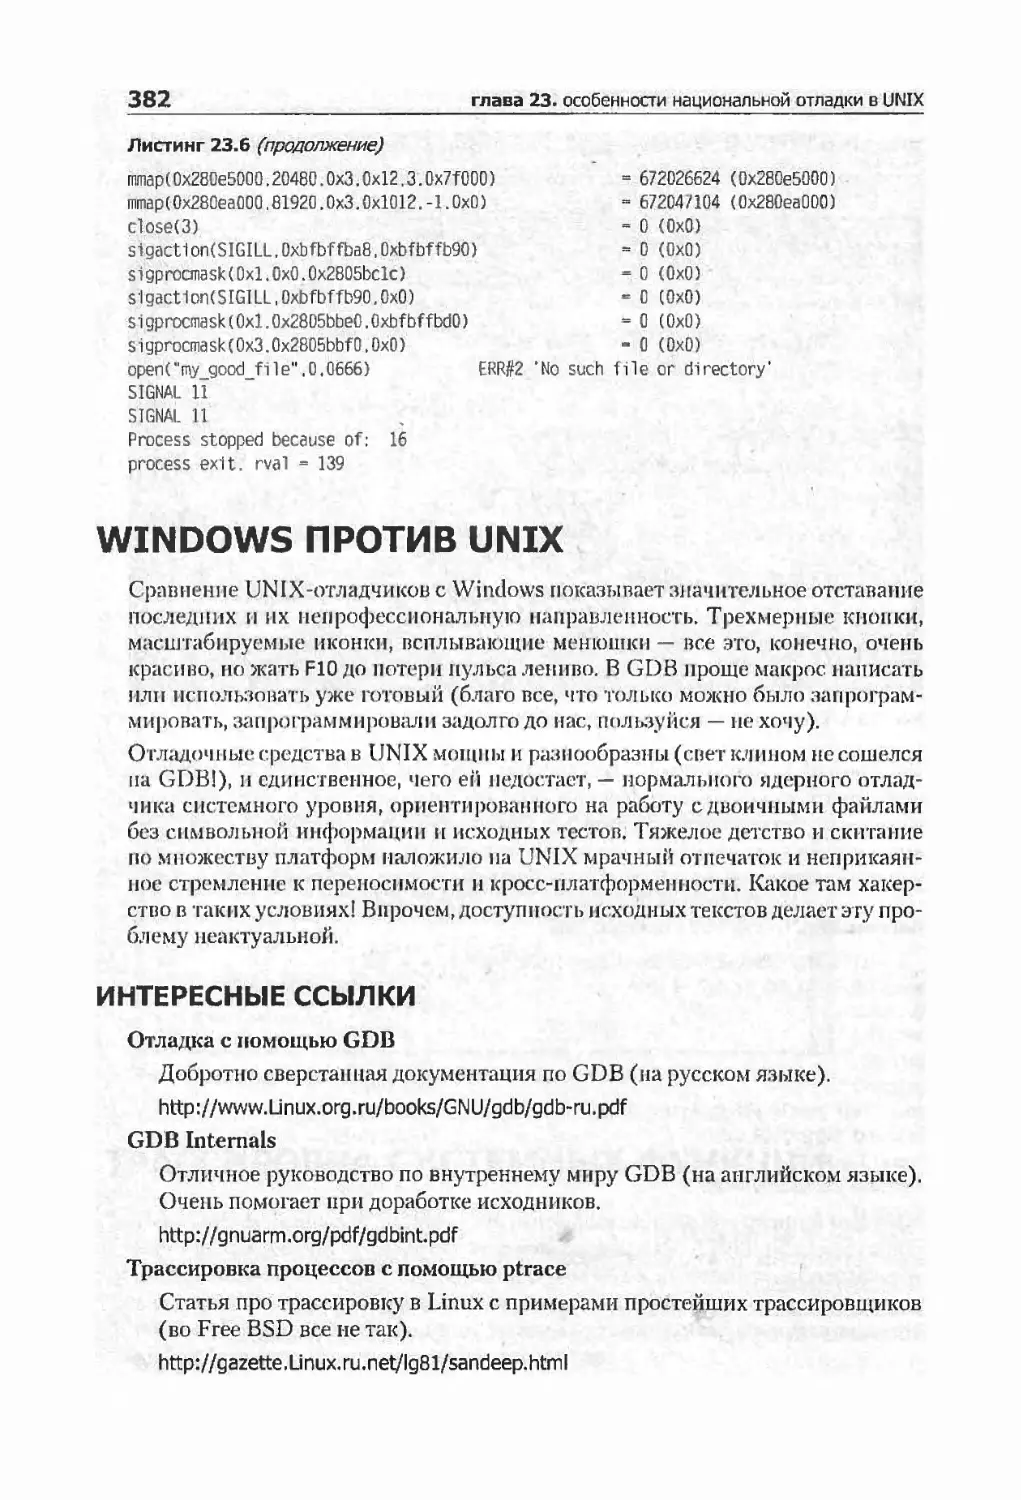 Windows против UNIX
интересные ссылки